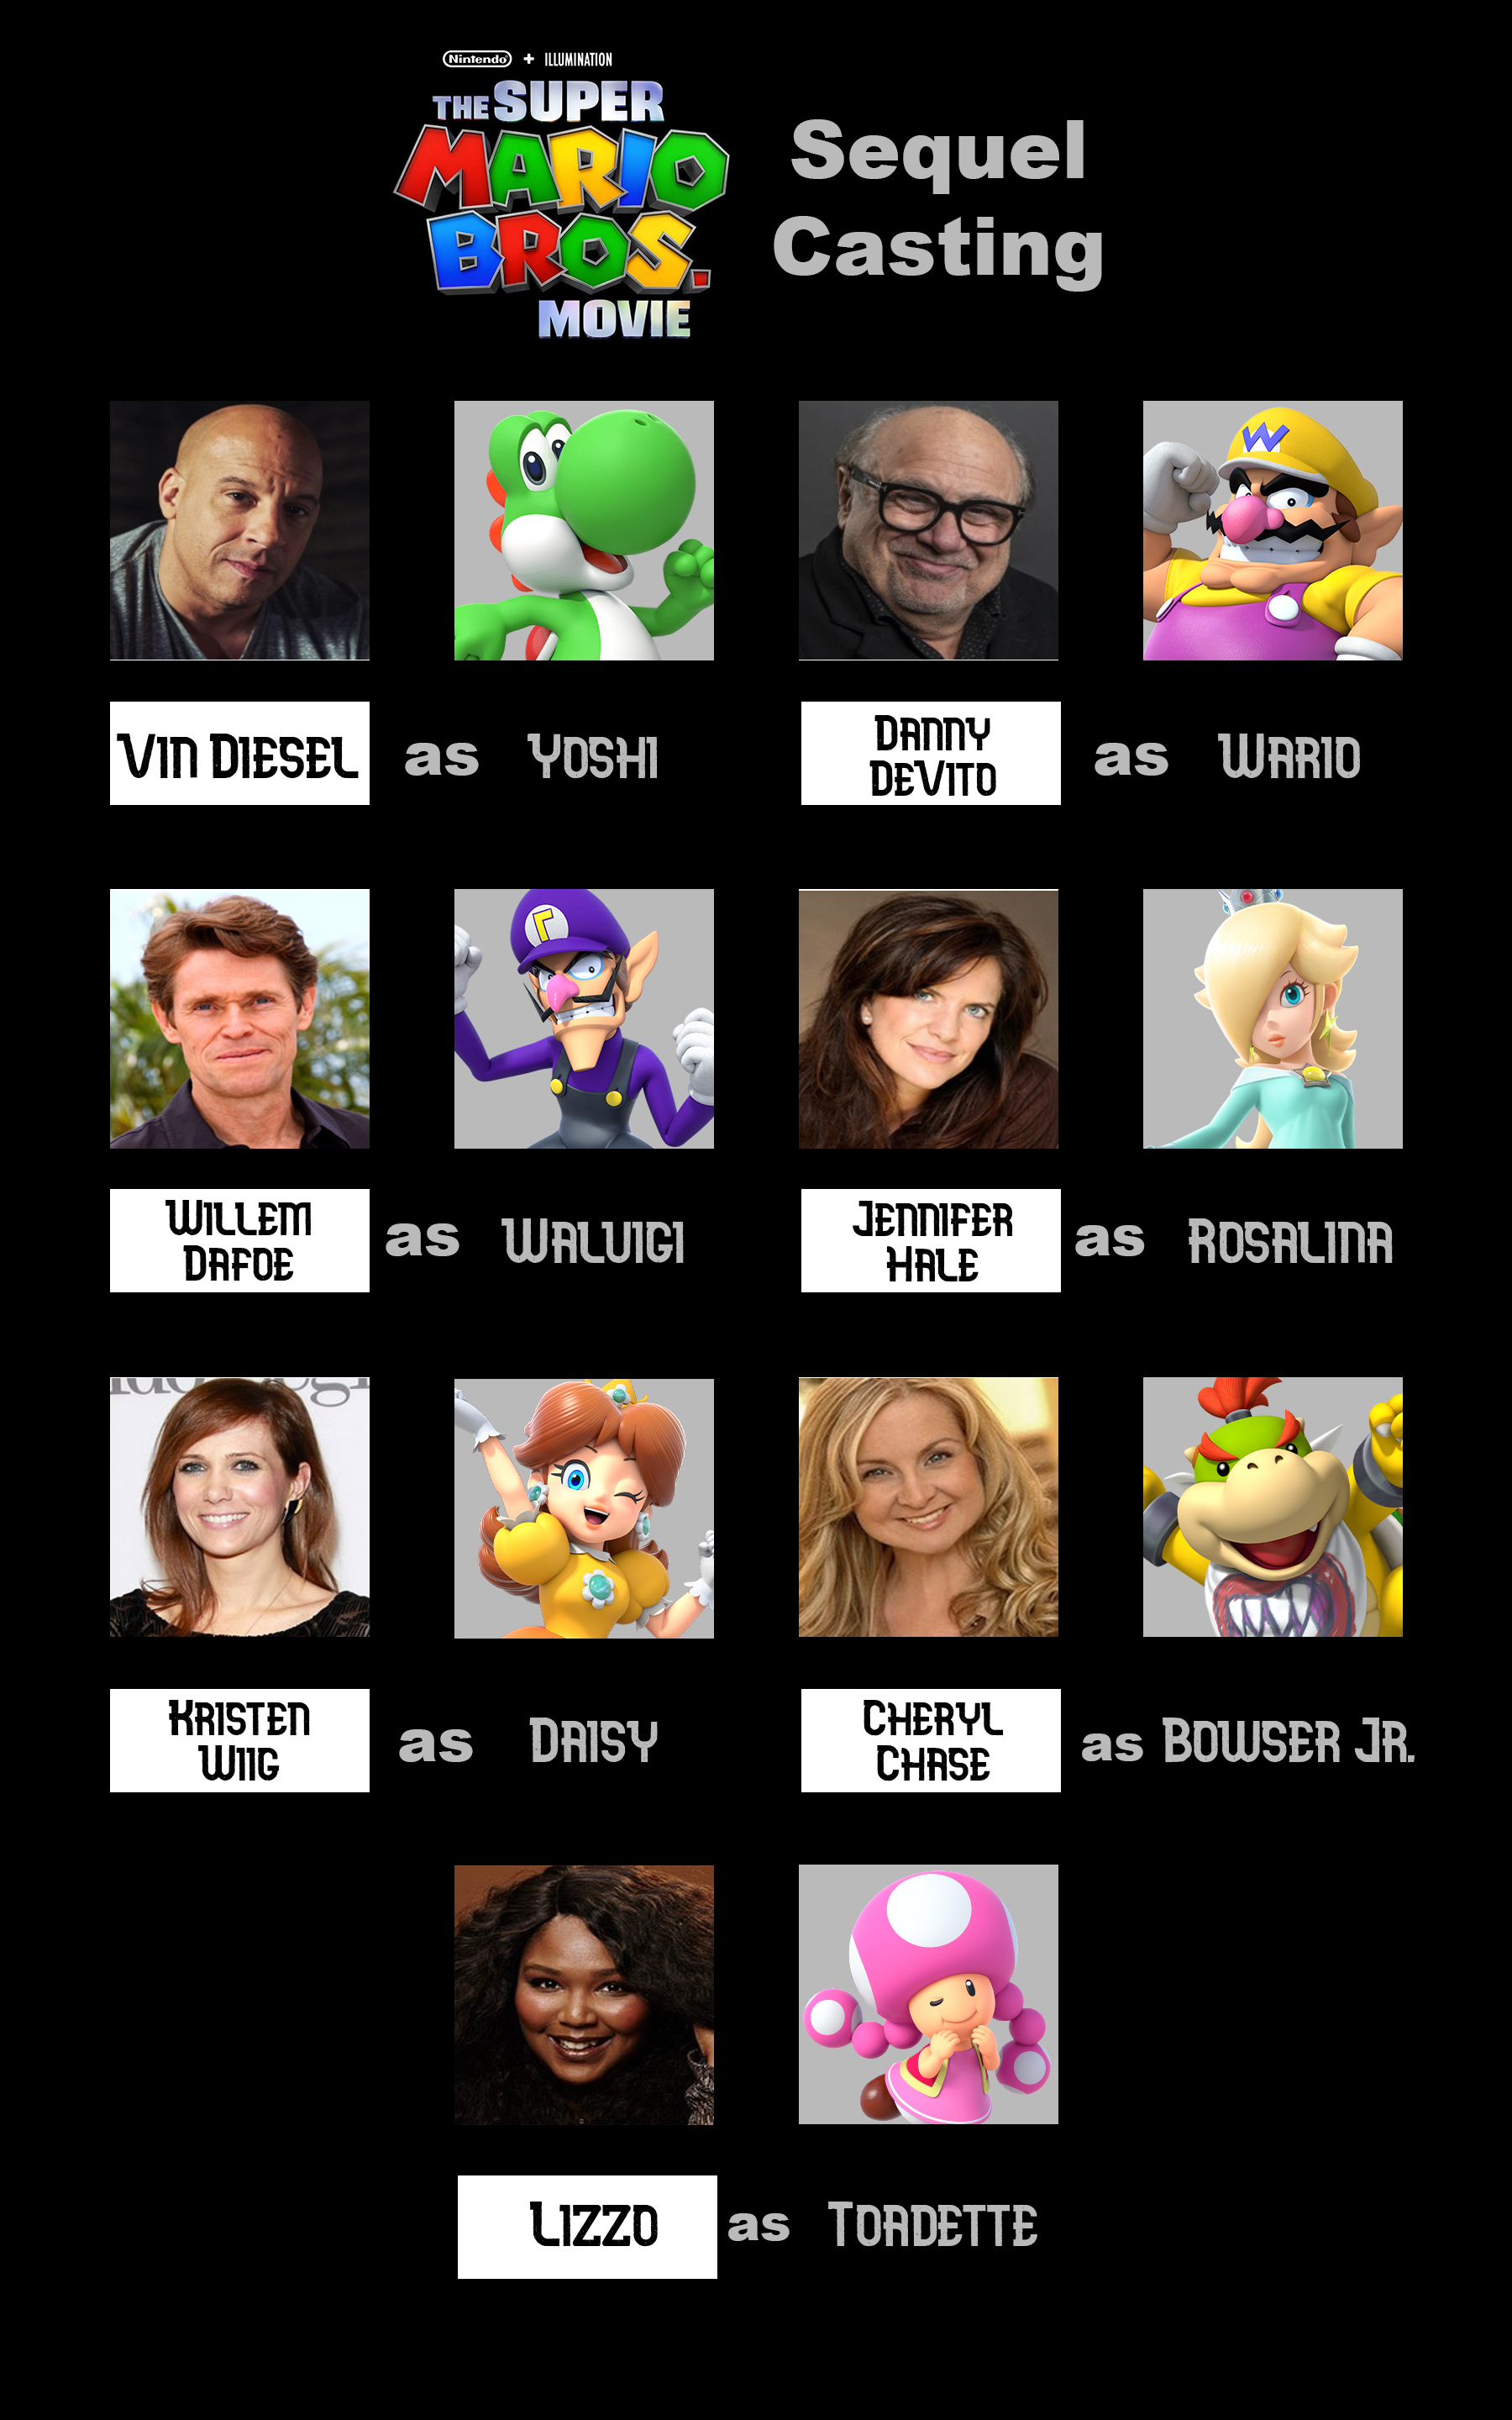 Casting Princess Daisy For The Super Mario Bros. Movie 2